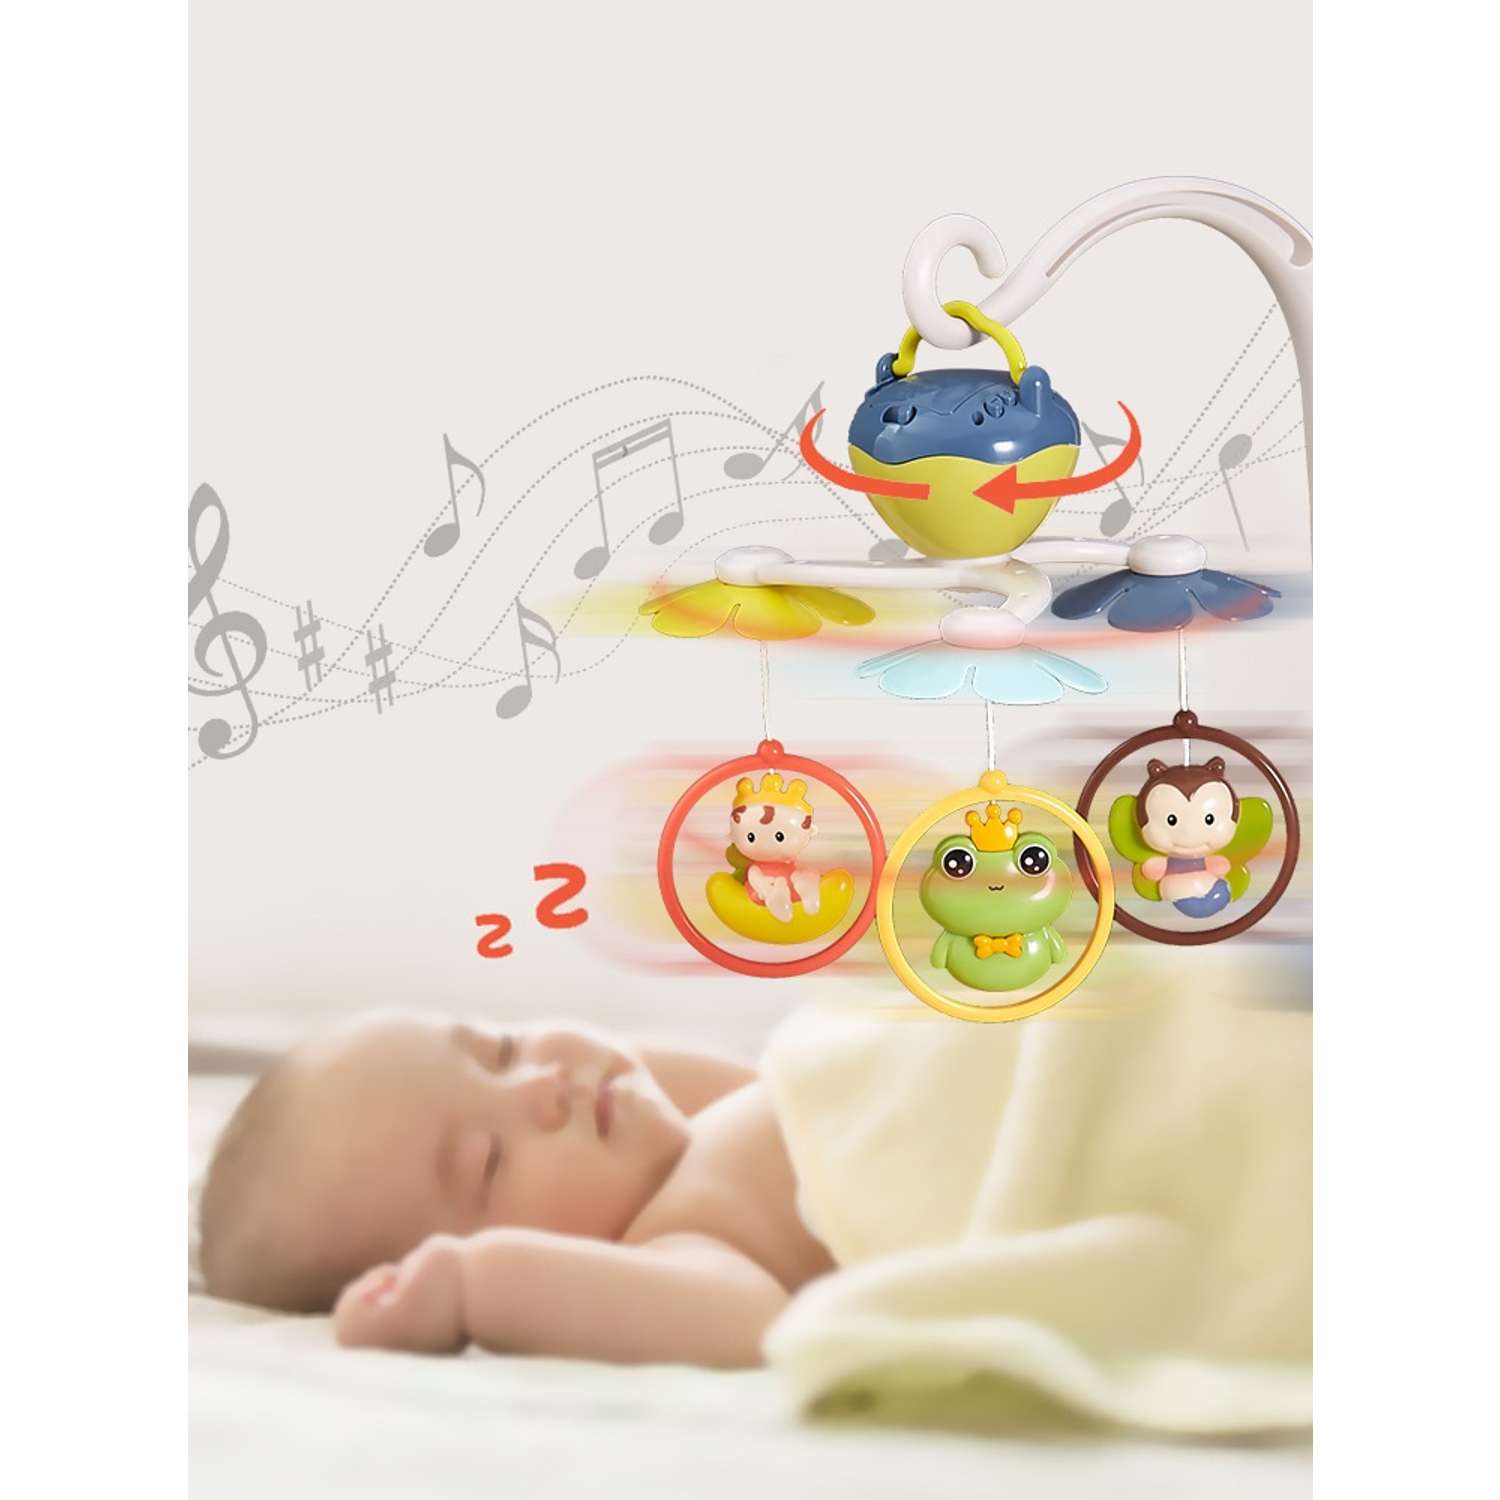 Музыкальный мобиль SHARKTOYS карусель для ребенка 18 песен 3 игрушки - фото 4